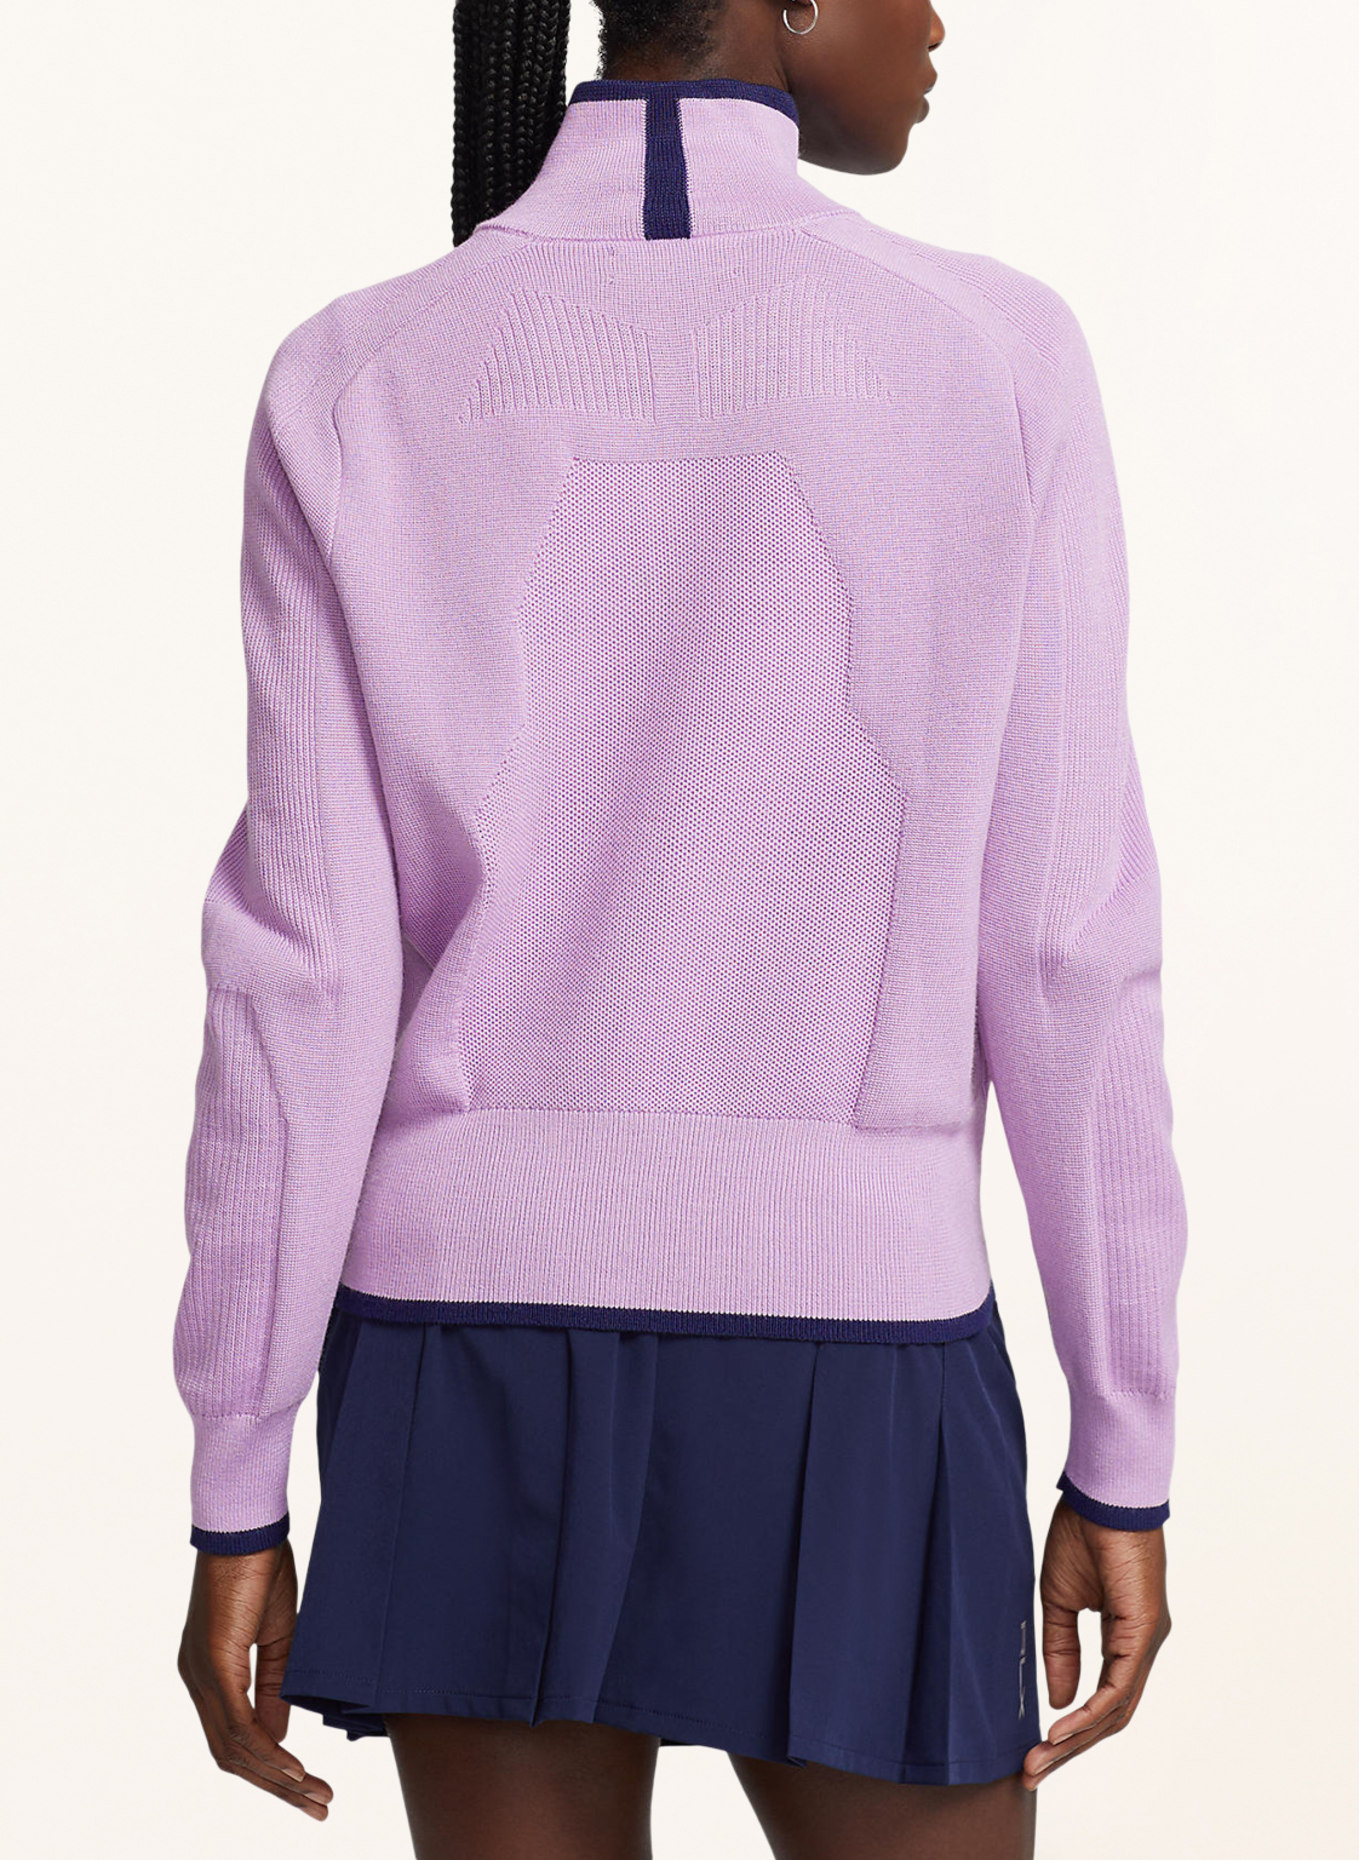 RLX RALPH LAUREN Half-zip sweater, Color: LIGHT PURPLE (Image 3)